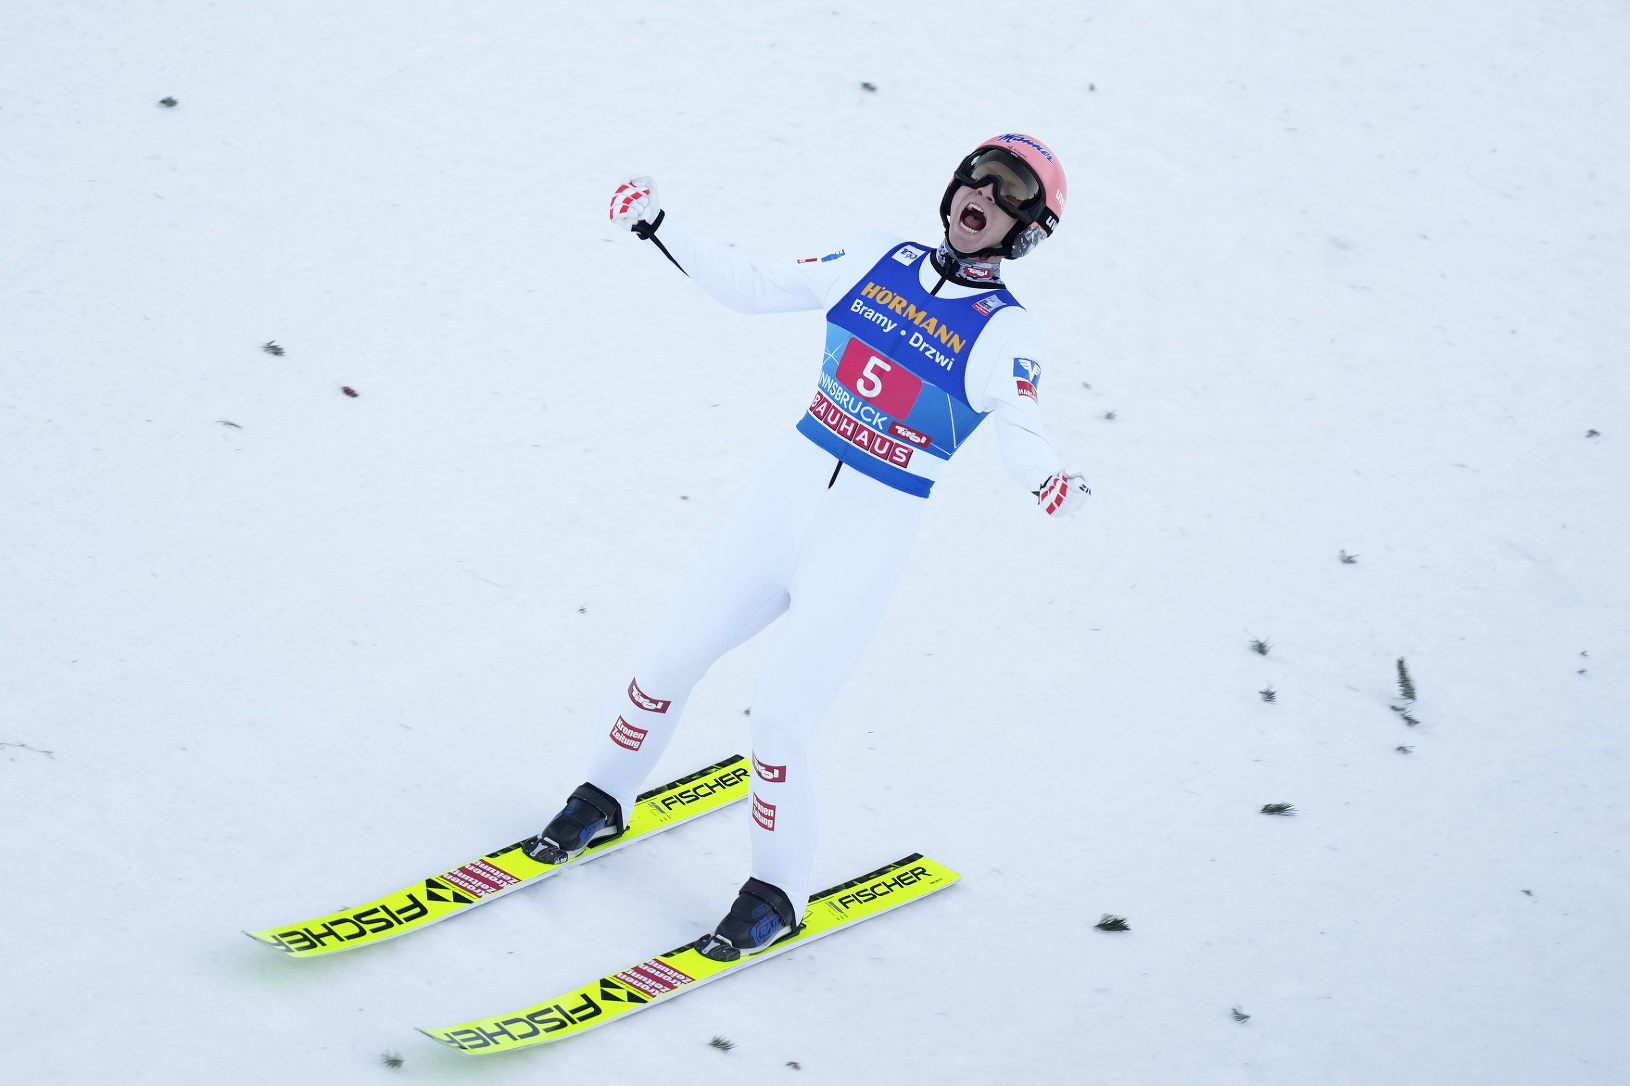 Rakúsky skokan na lyžiach